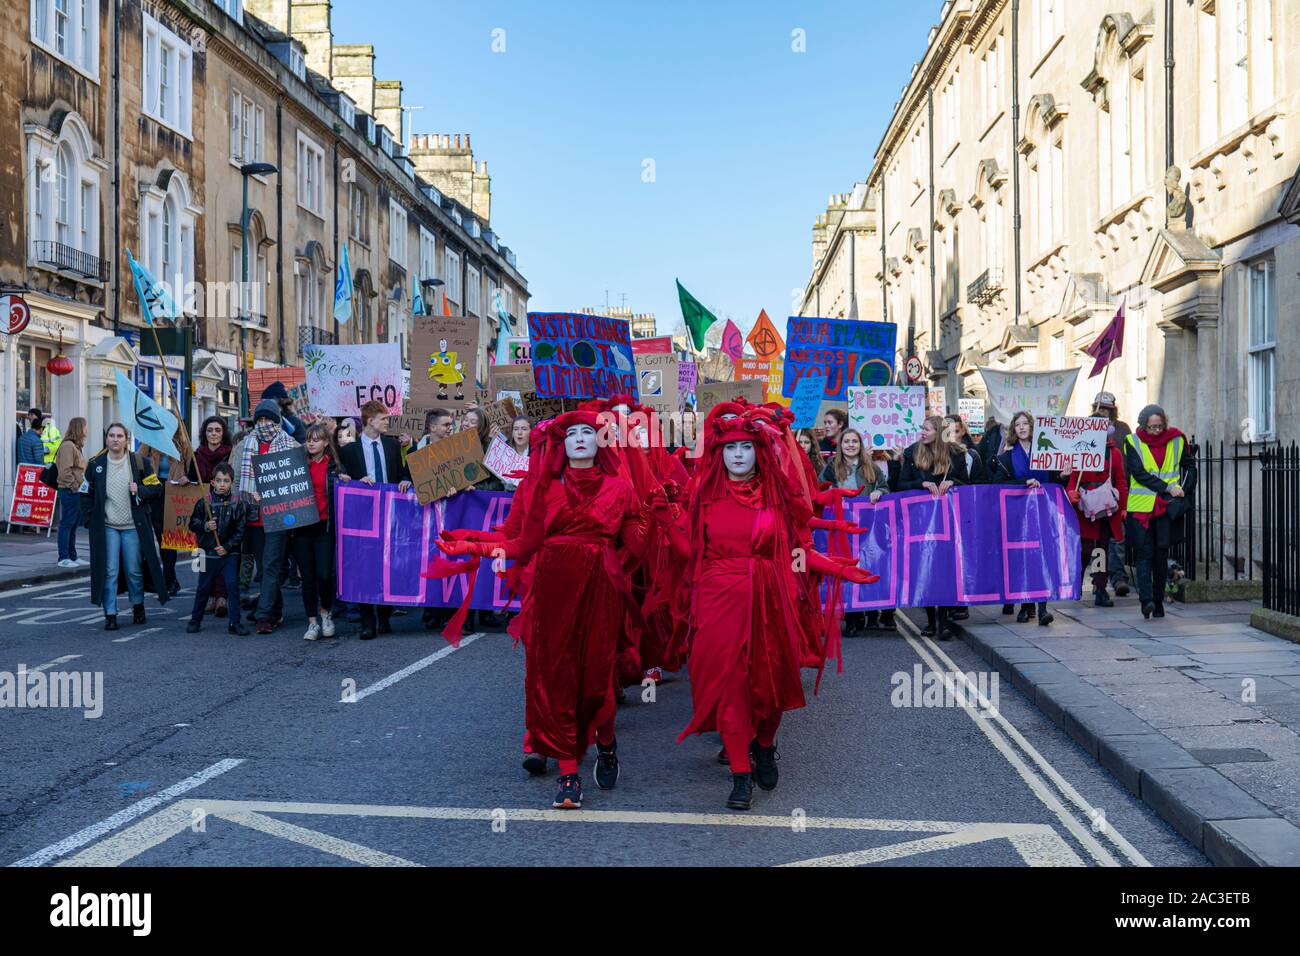 Extinction les manifestants de la Brigade rouge de Rébellion sur le changement climatique se rassemblent dans le centre de Bath City avec la campagne de l'Alliance climatique pour les jeunes de Bath pour l'action. ROYAUME-UNI Banque D'Images